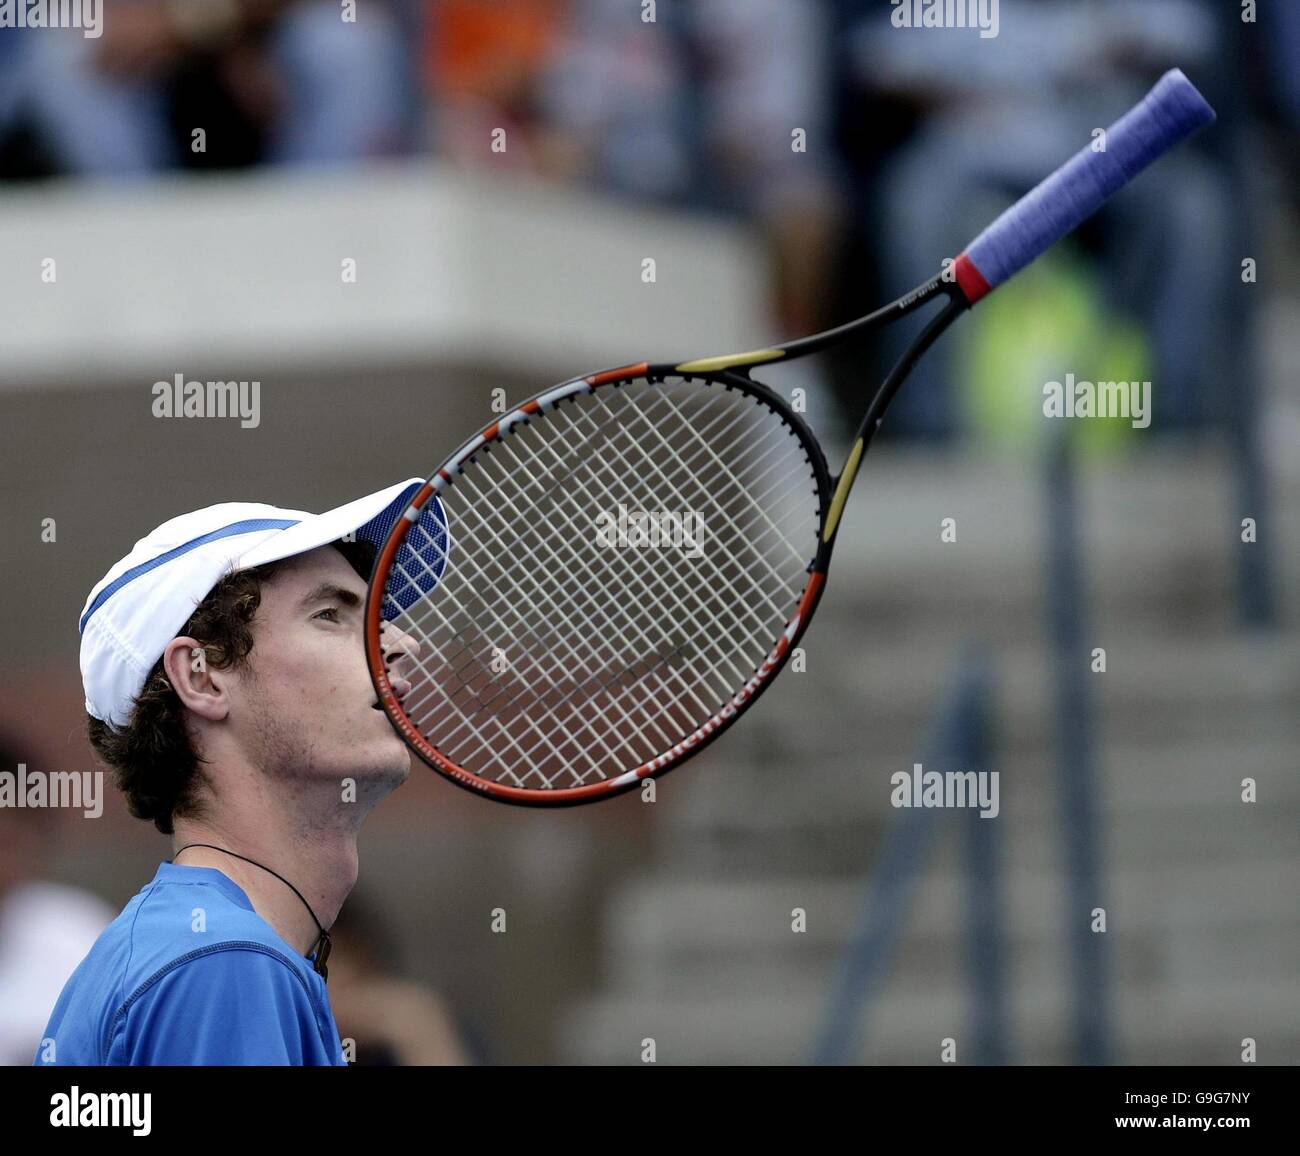 Andy Murray della Gran Bretagna lancia il suo racket durante il terzo round match contro Fernando Gonzalez del Cile negli US Open a Flushing Meadow, New York. Foto Stock